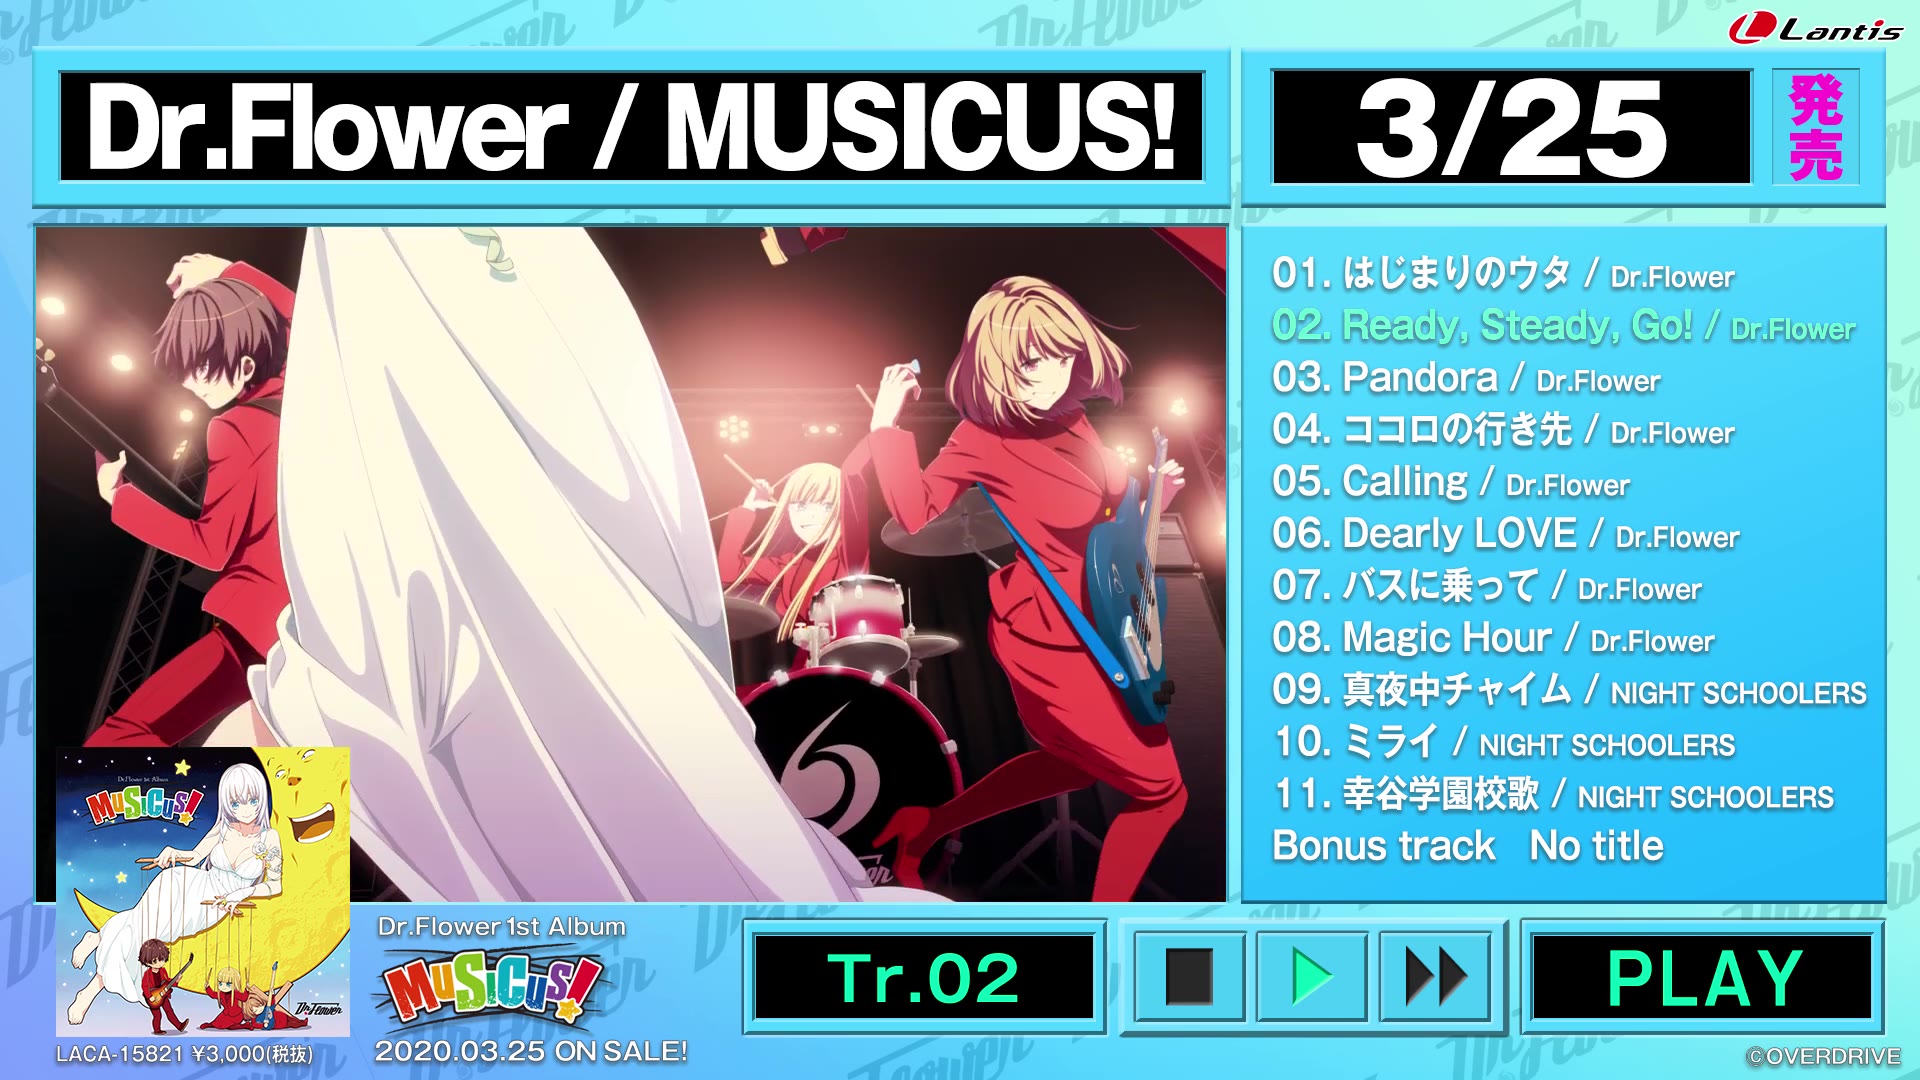 Dr.Flower 2ndアルバム「Believe your way」 musicus - brandsynariourdu.com